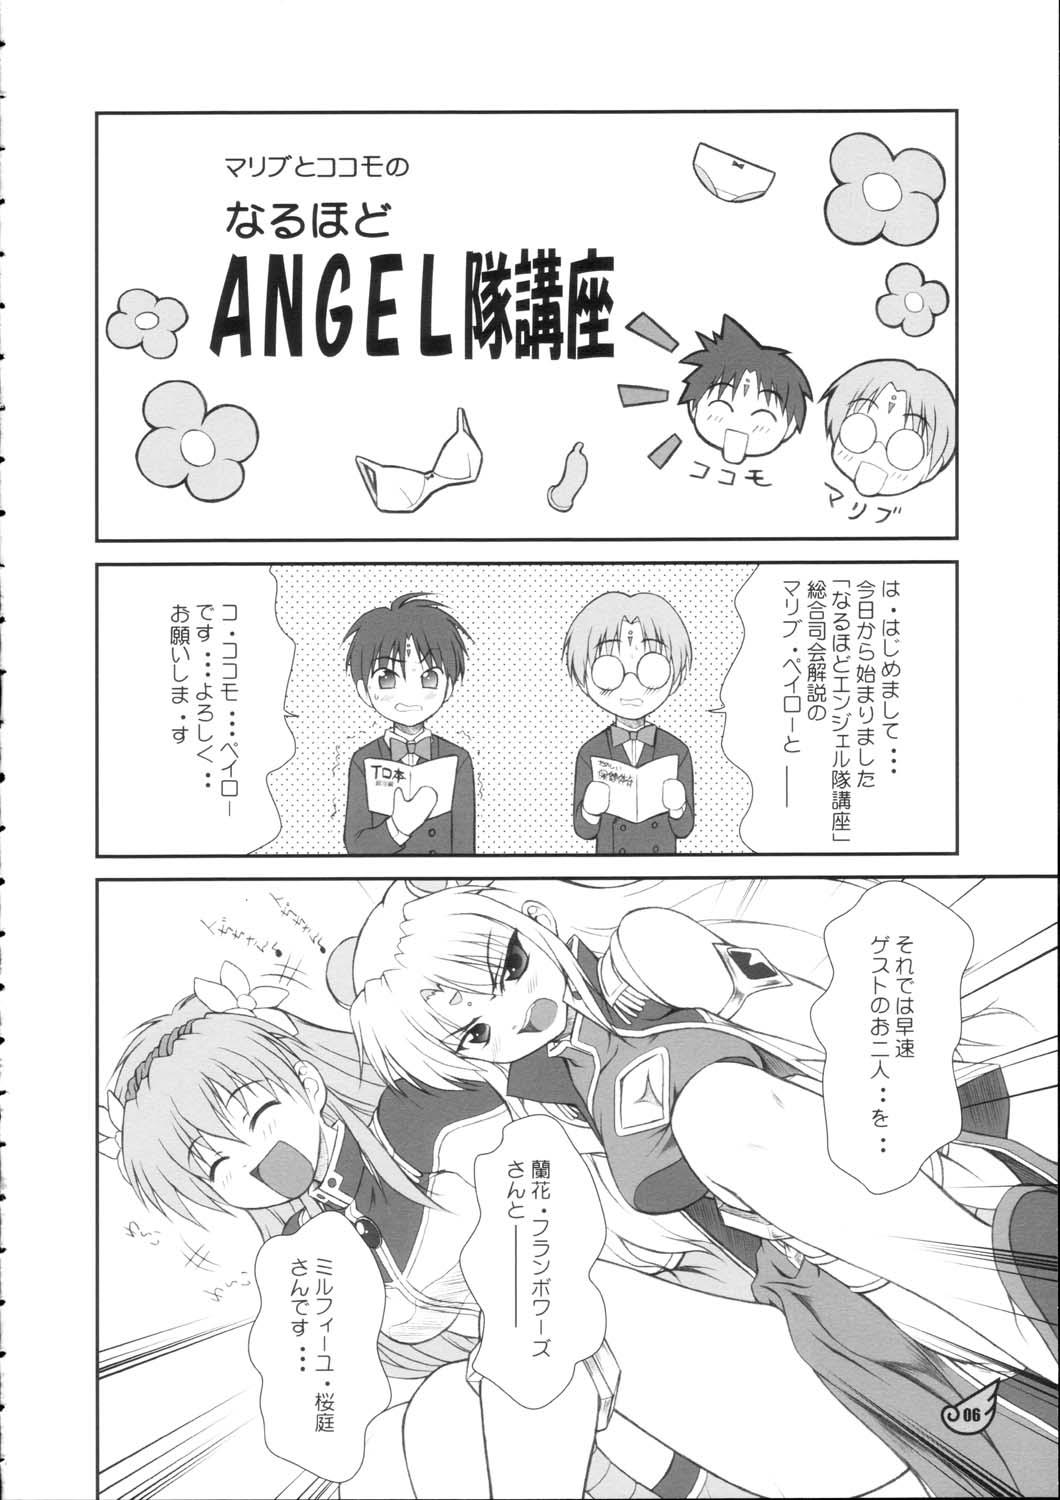 Hot Teen Ranpha Shiridaku Oomori Z - Galaxy angel Milfporn - Page 5